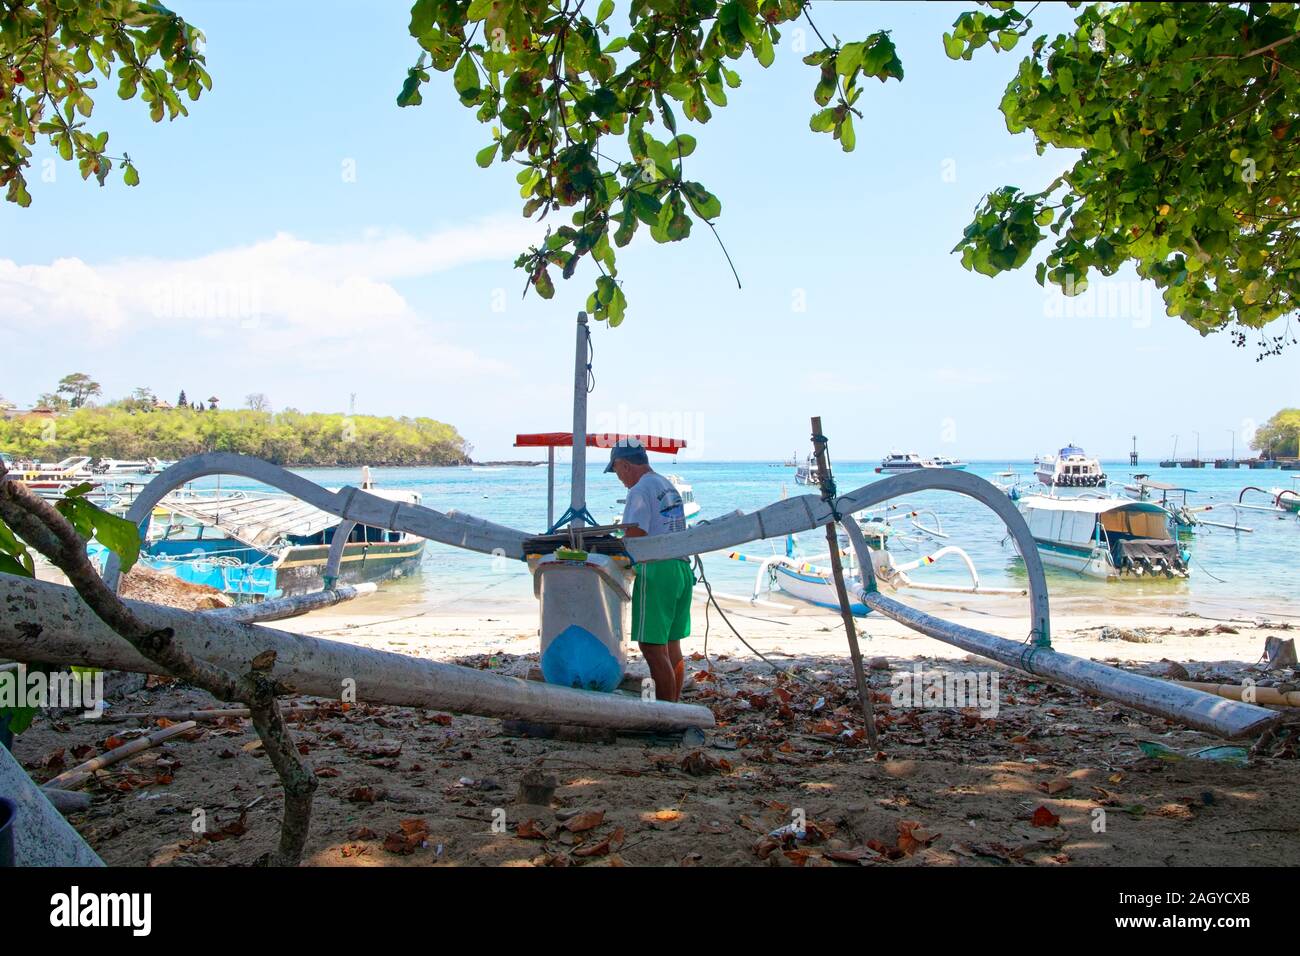 Angler se tenir derrière dans la couronne de l'arbre d'ombre, de travailler sur son bateau à Bali beach Banque D'Images